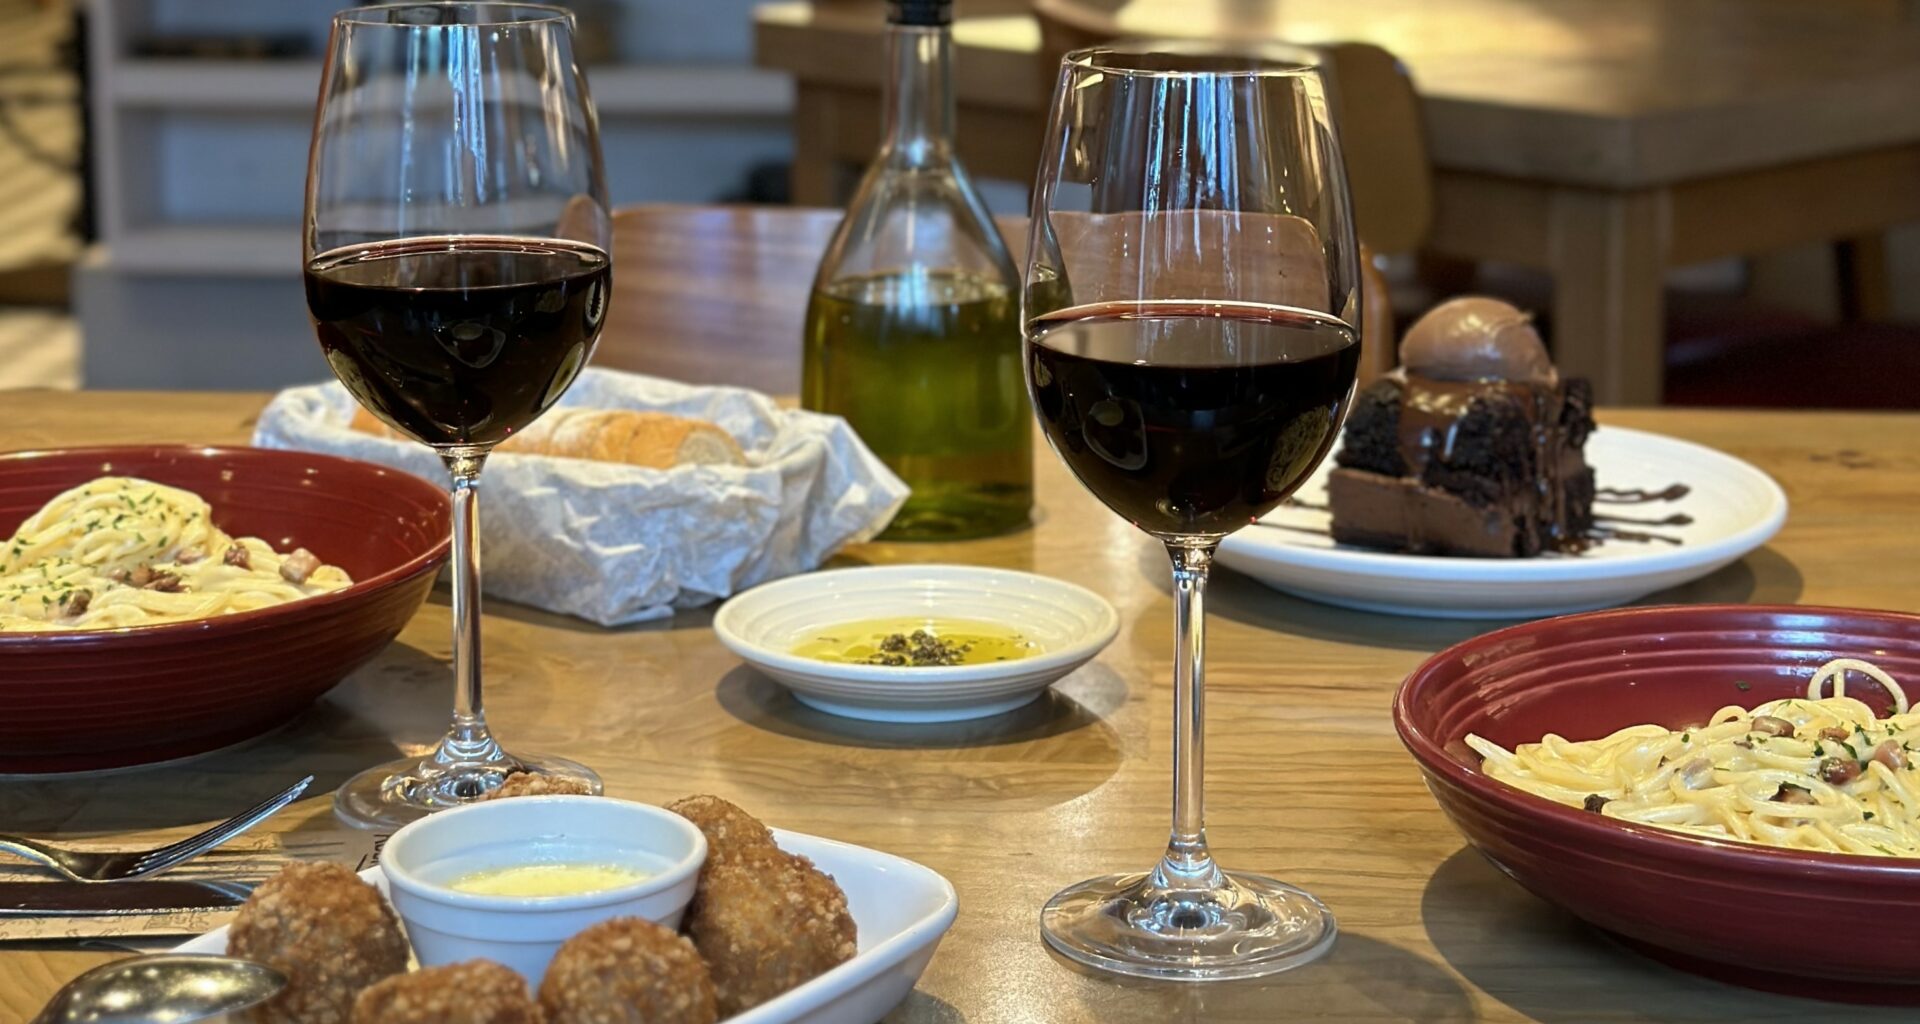 No Abbraccio você pode saborear um delicioso Menu para 2 com duas taças de vinho e uma tigela de macarrão, tudo servido em uma charmosa mesa de madeira.